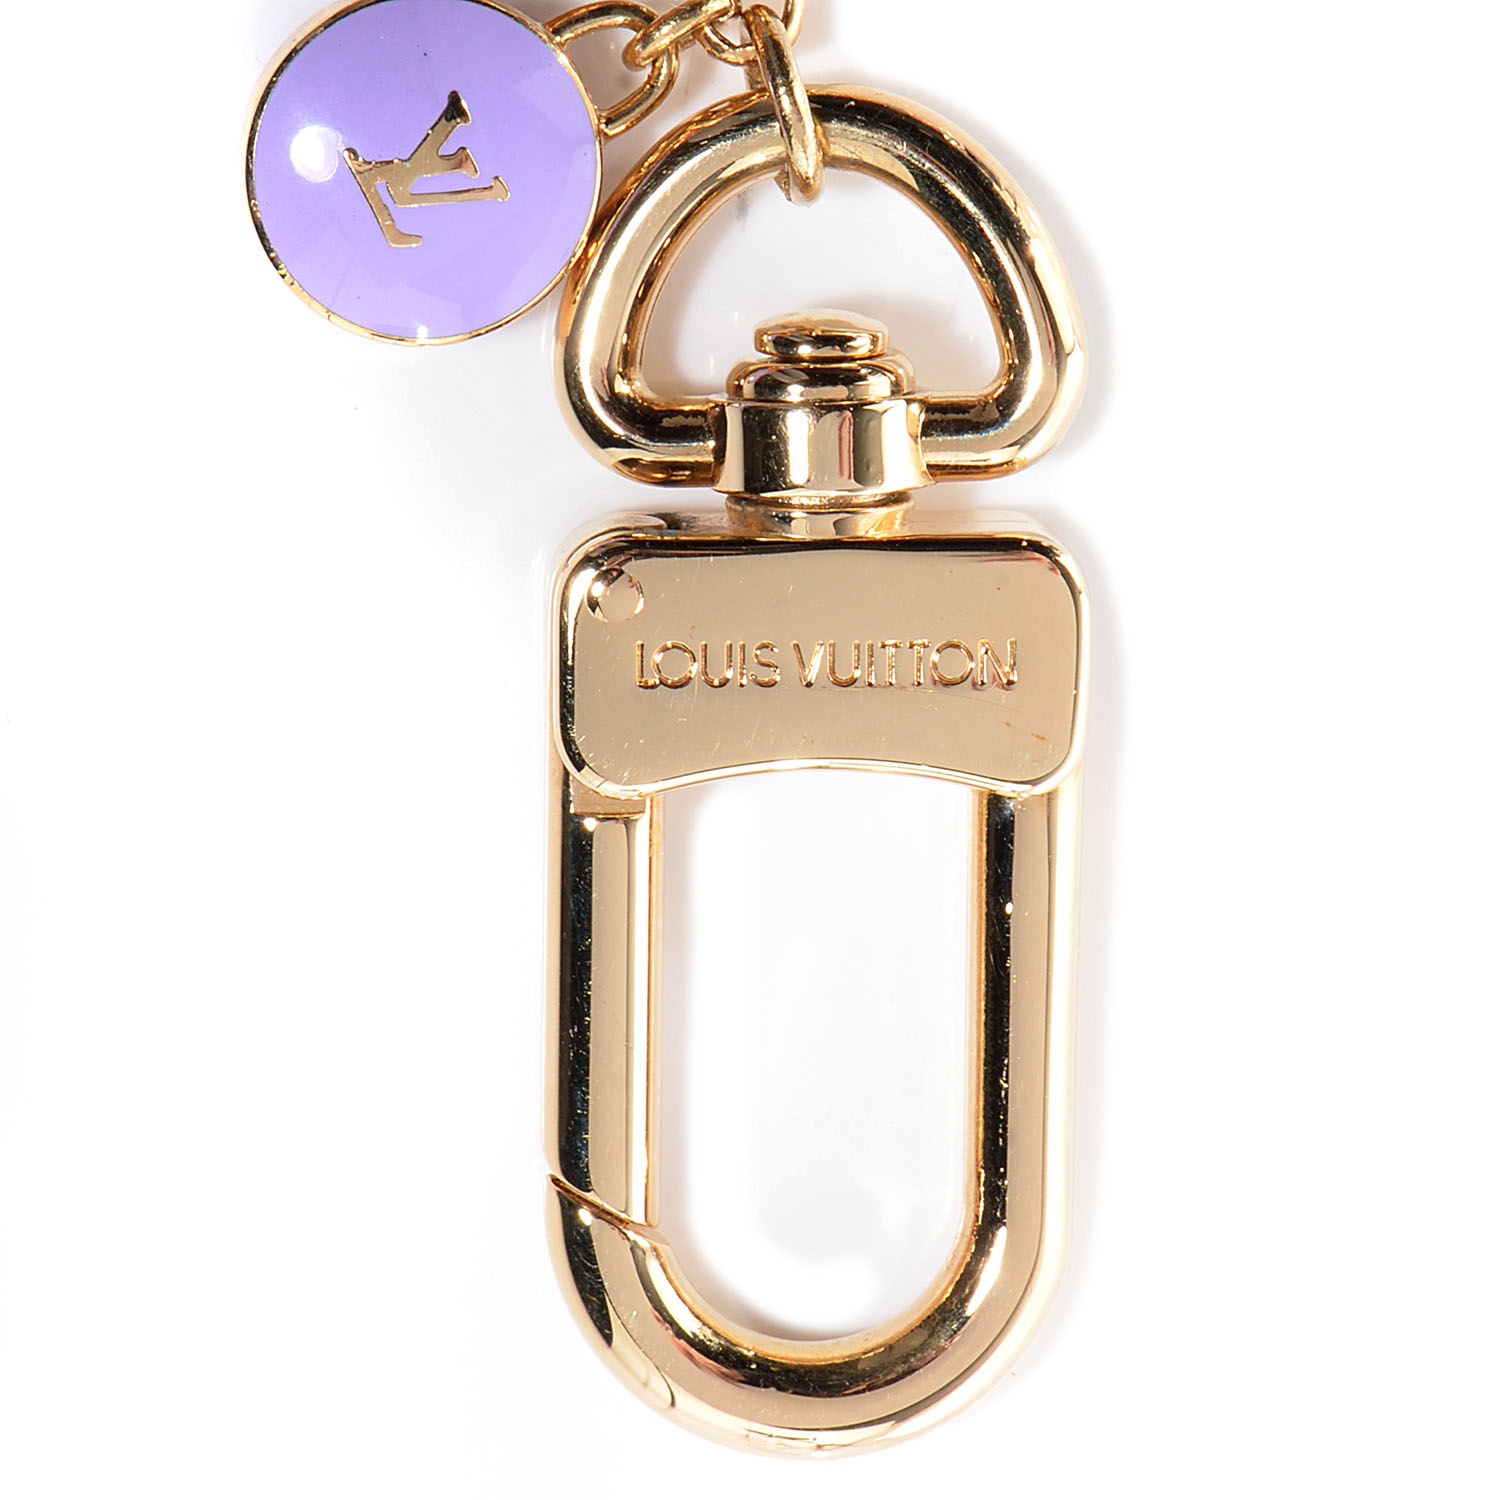 LOUIS VUITTON Pastilles Key Chain Bag Charm Multicolor 77070